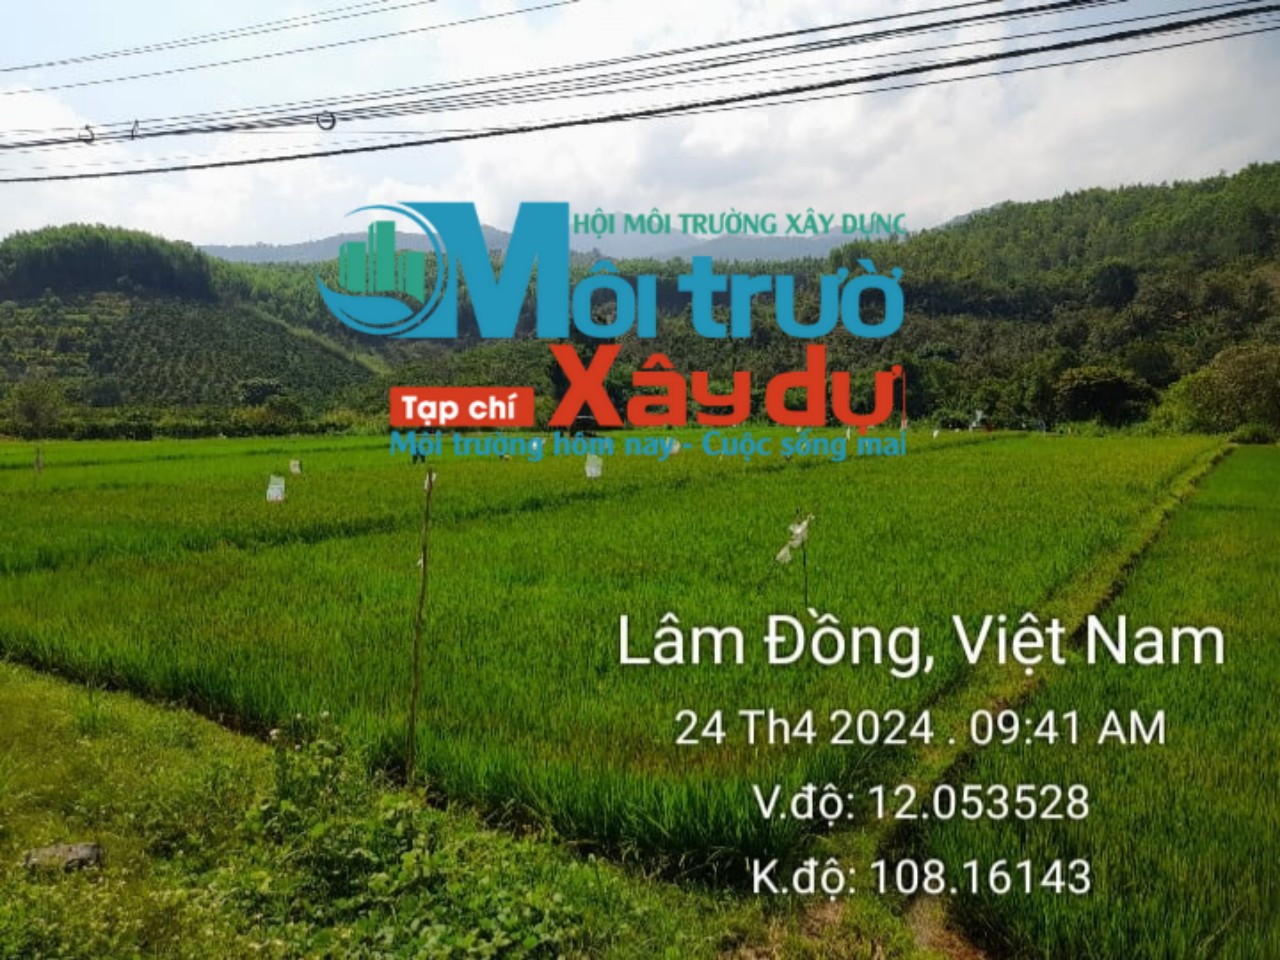 Đam Rông (Lâm Đồng): Điểm sáng trong công tác phòng chống nắng hạn mùa khô năm 2024